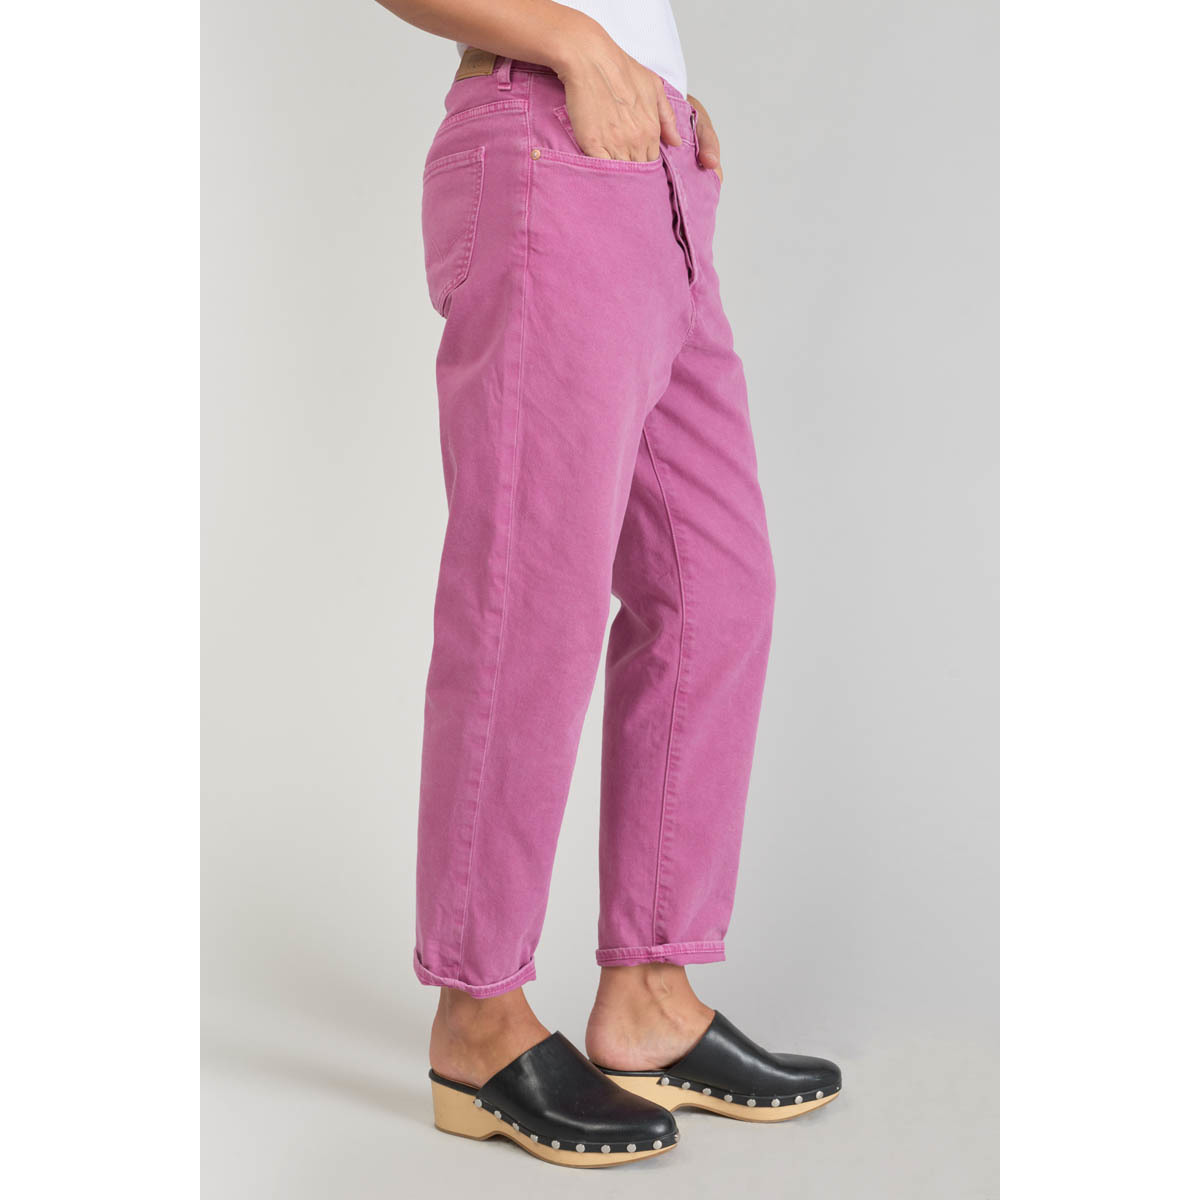 Le Temps des Cerises Violet Cosy boyfit 7/8ème jeans violet rose SlHZ7AIP